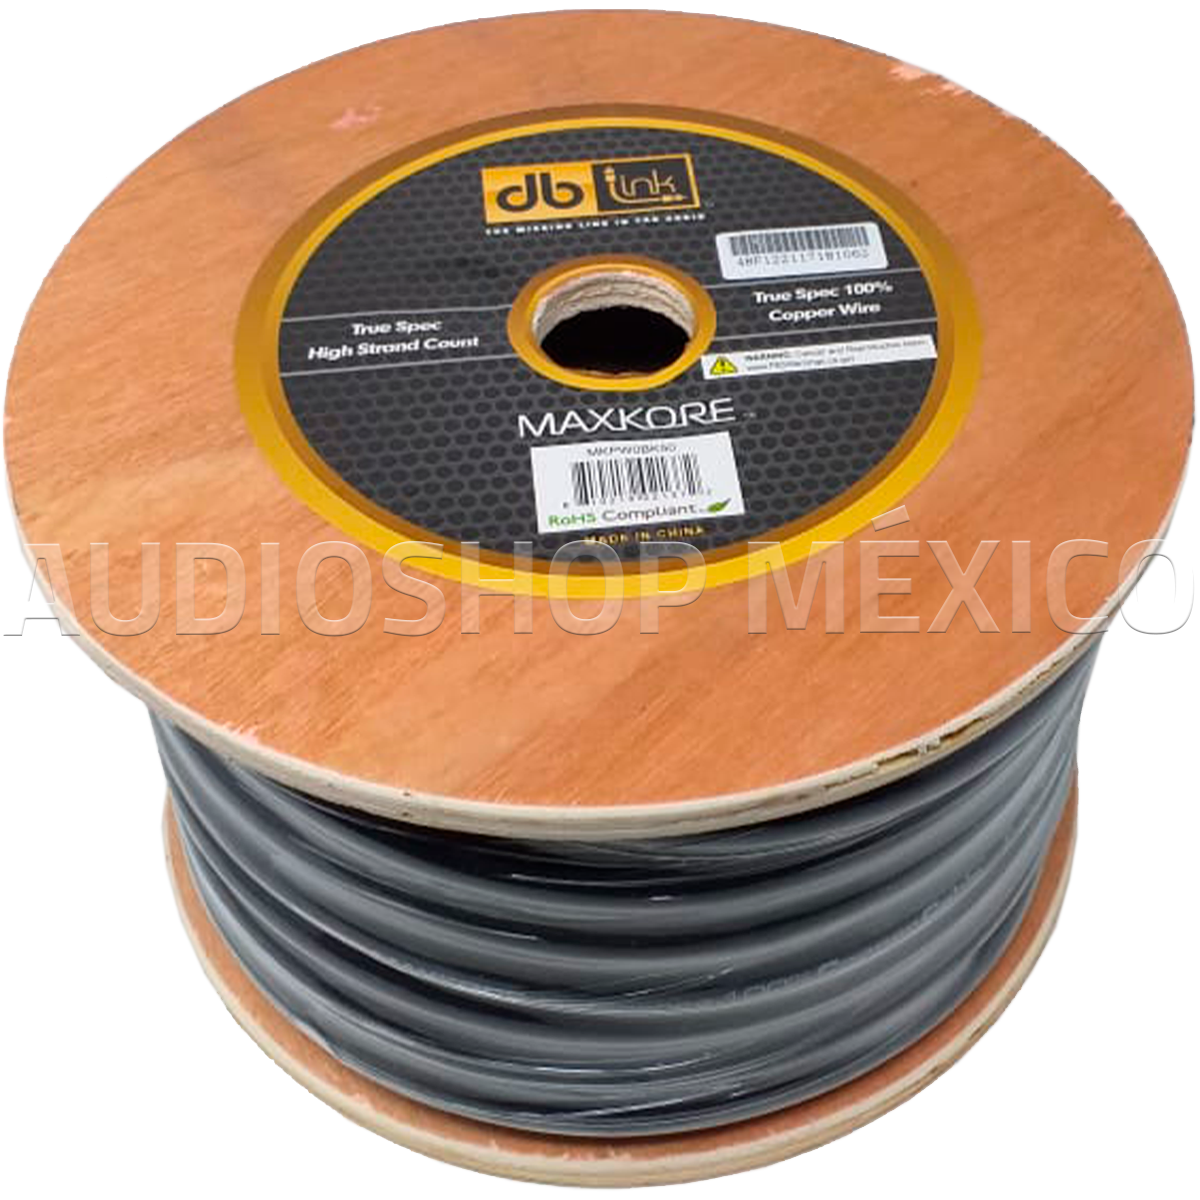 Rollo de Cable Profesional Calibre 0 DB Link MKPW0BK50 50 pies 100% Cobre AWG Color Negro